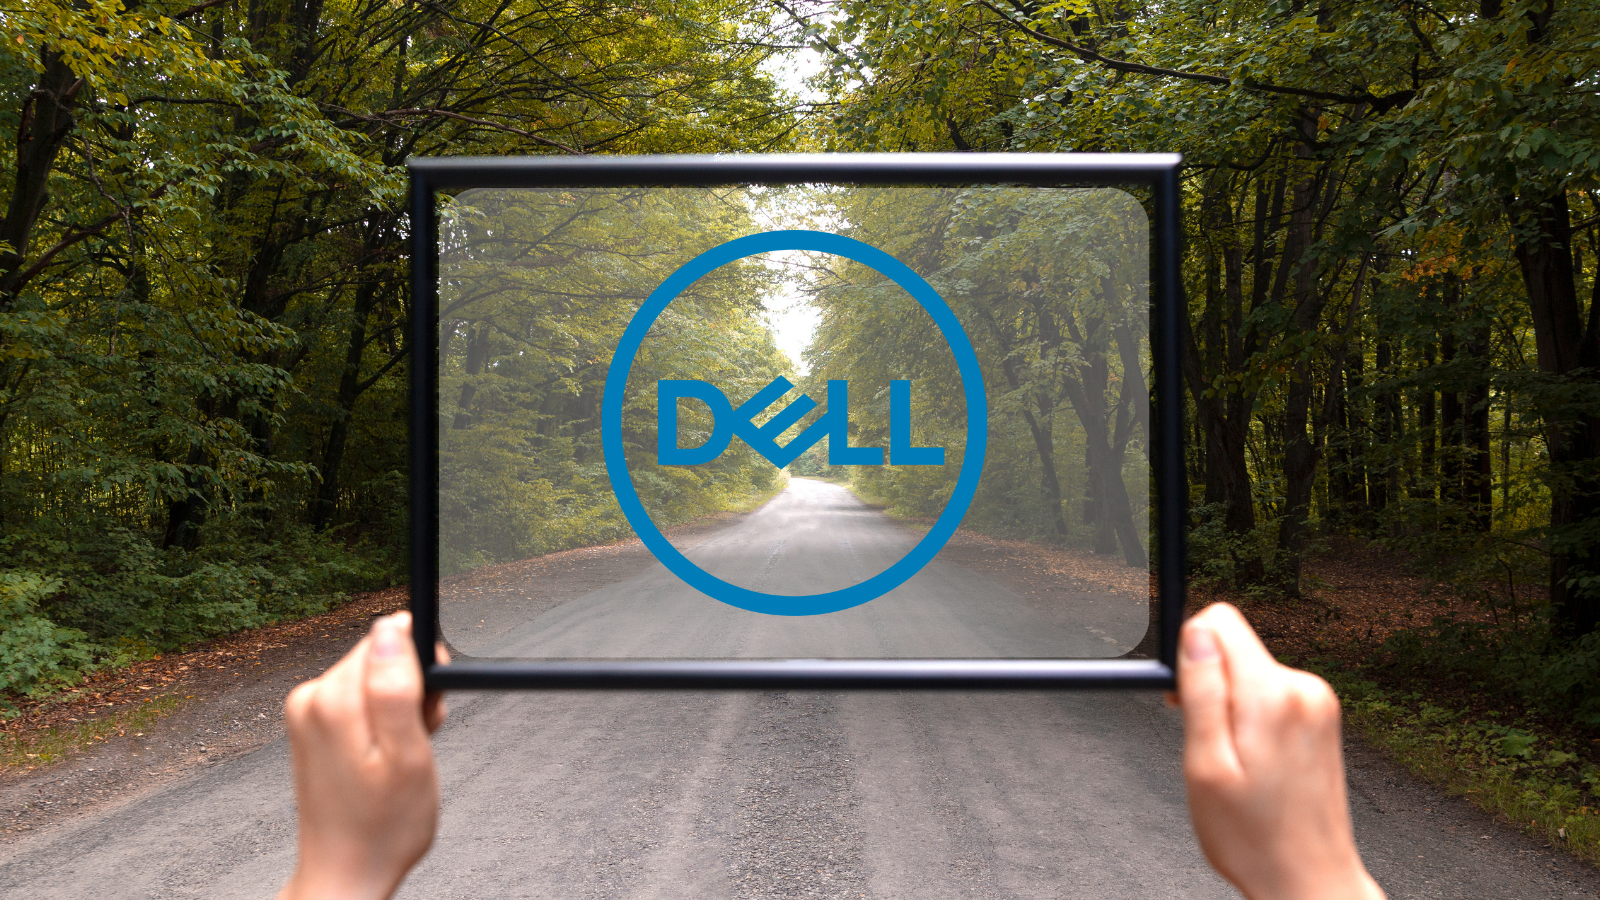 Halihazırda bu garanti desteğini sağlayan şirketler var. Bunlardan biri de Dell.